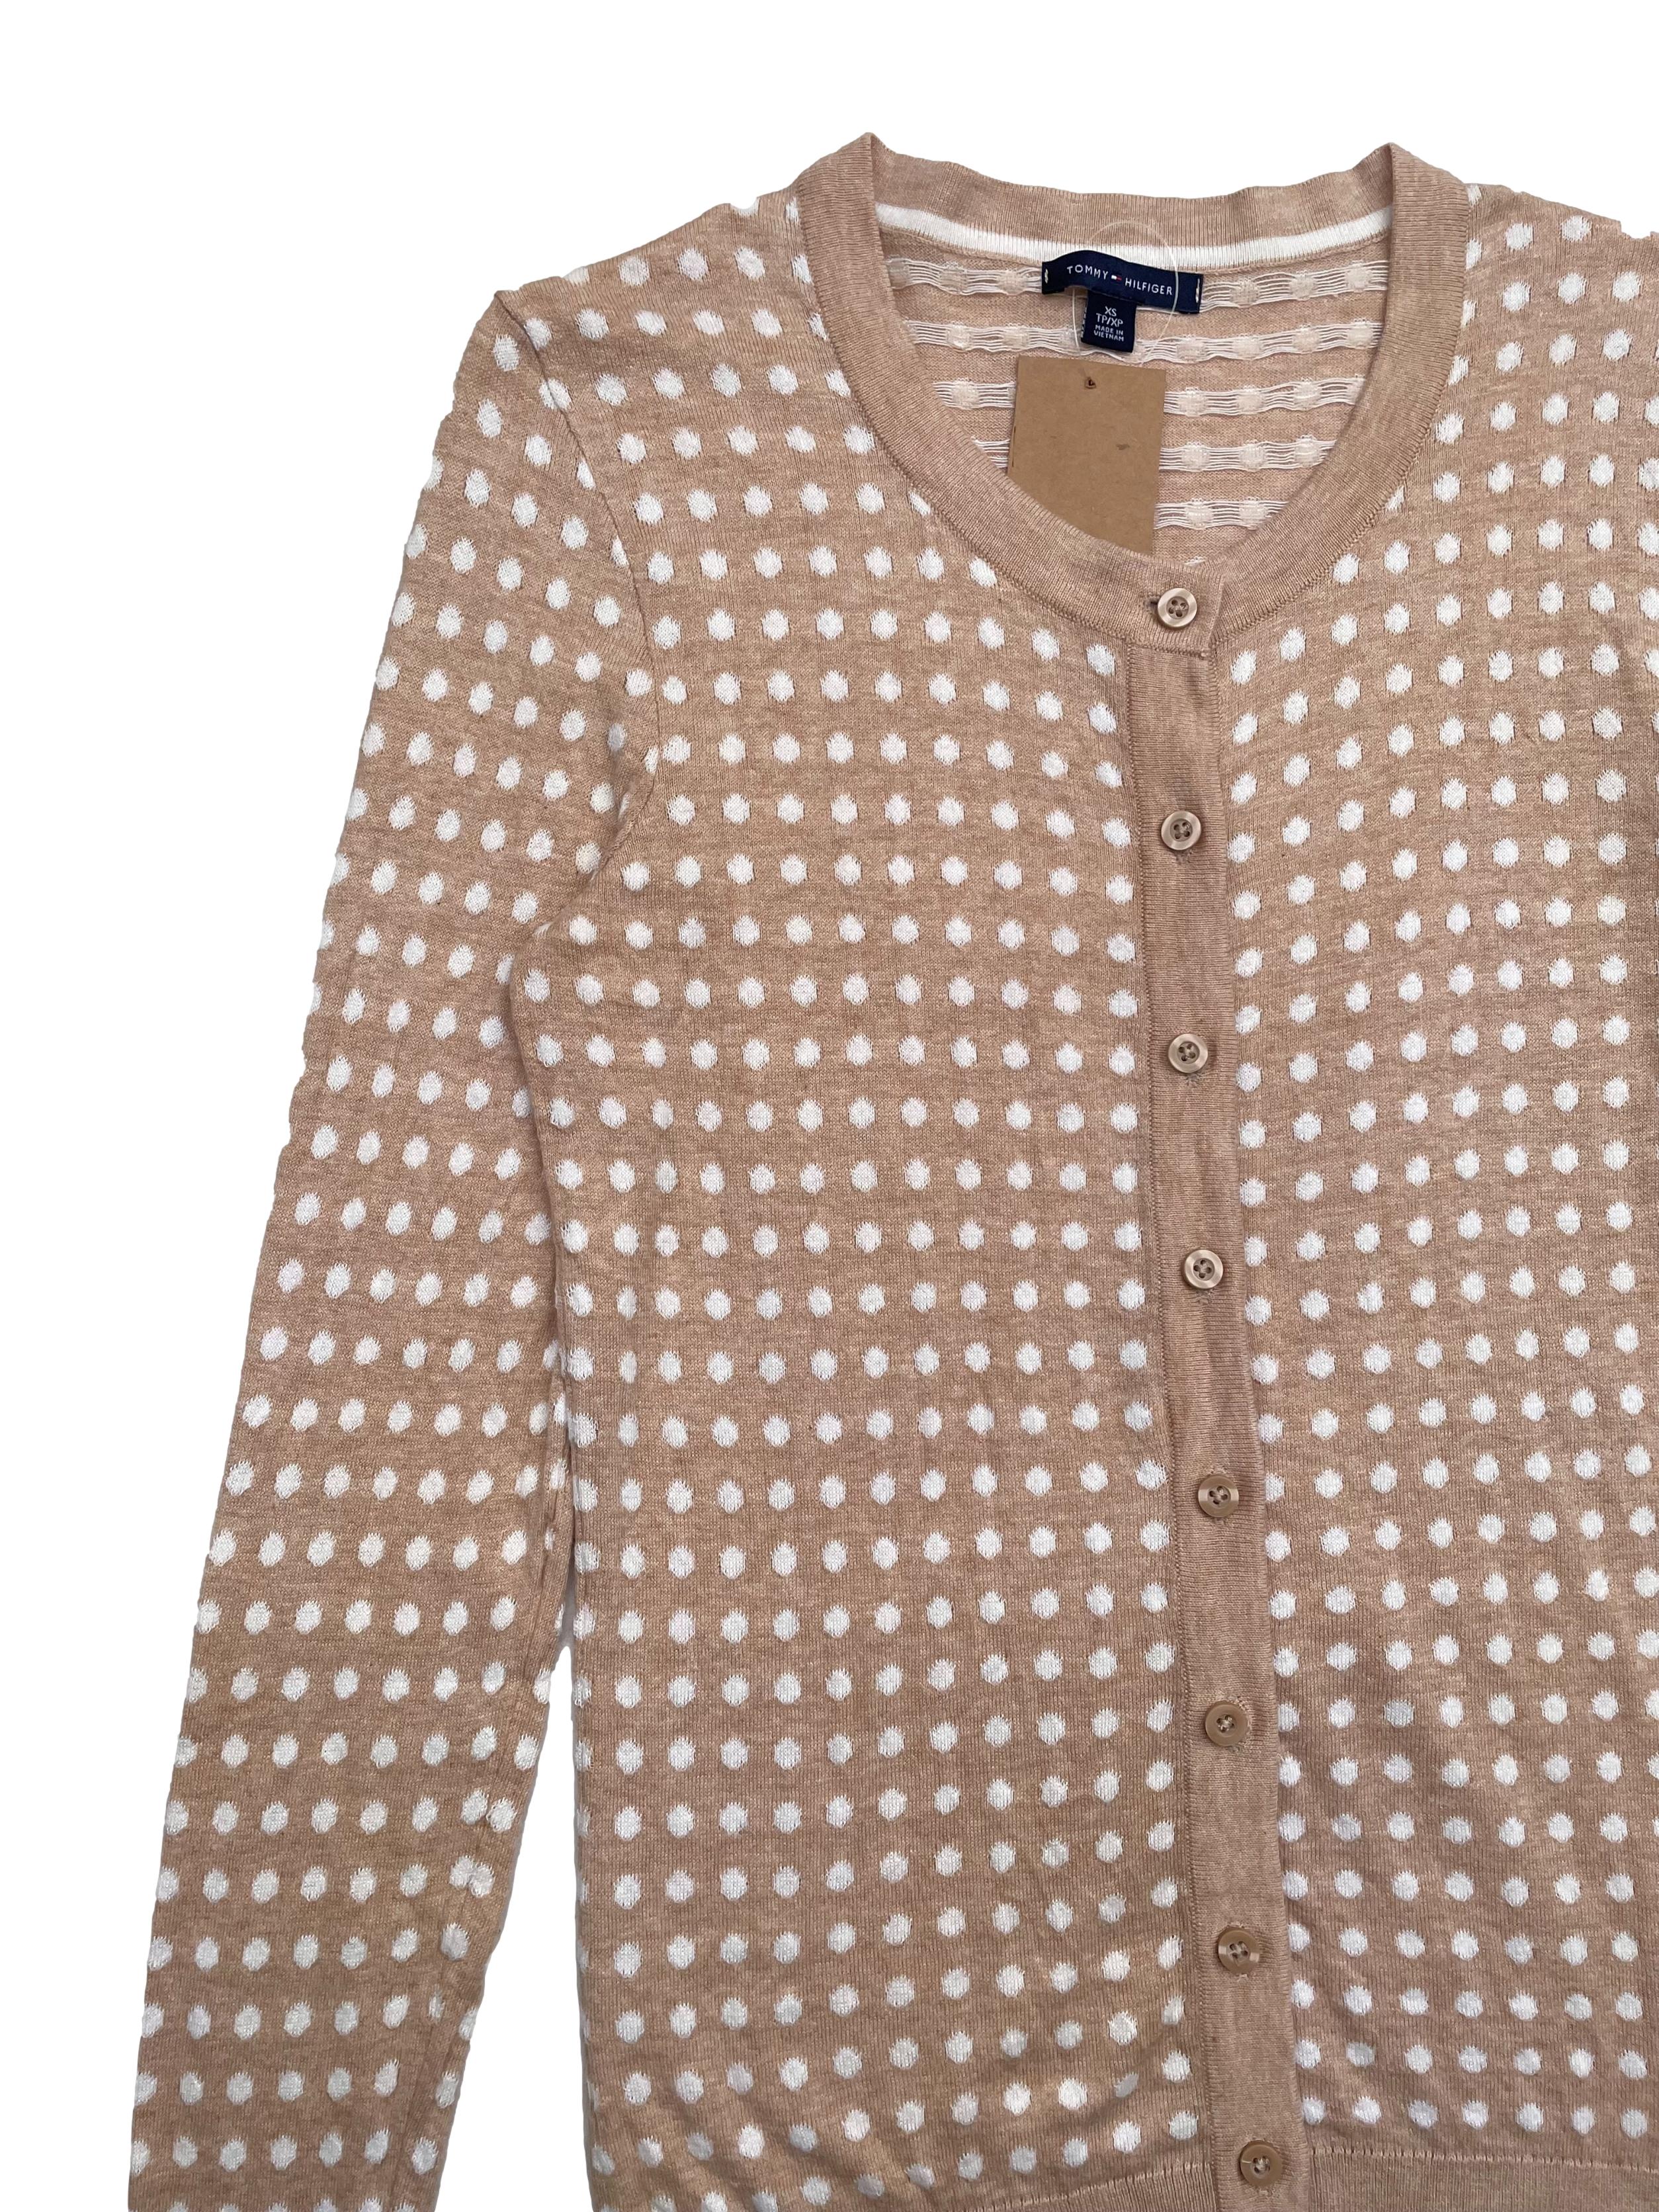 Cardigan Tommy Hilfiger color beige con polka dots blancos, 100% algodón. Largo 64cm. 